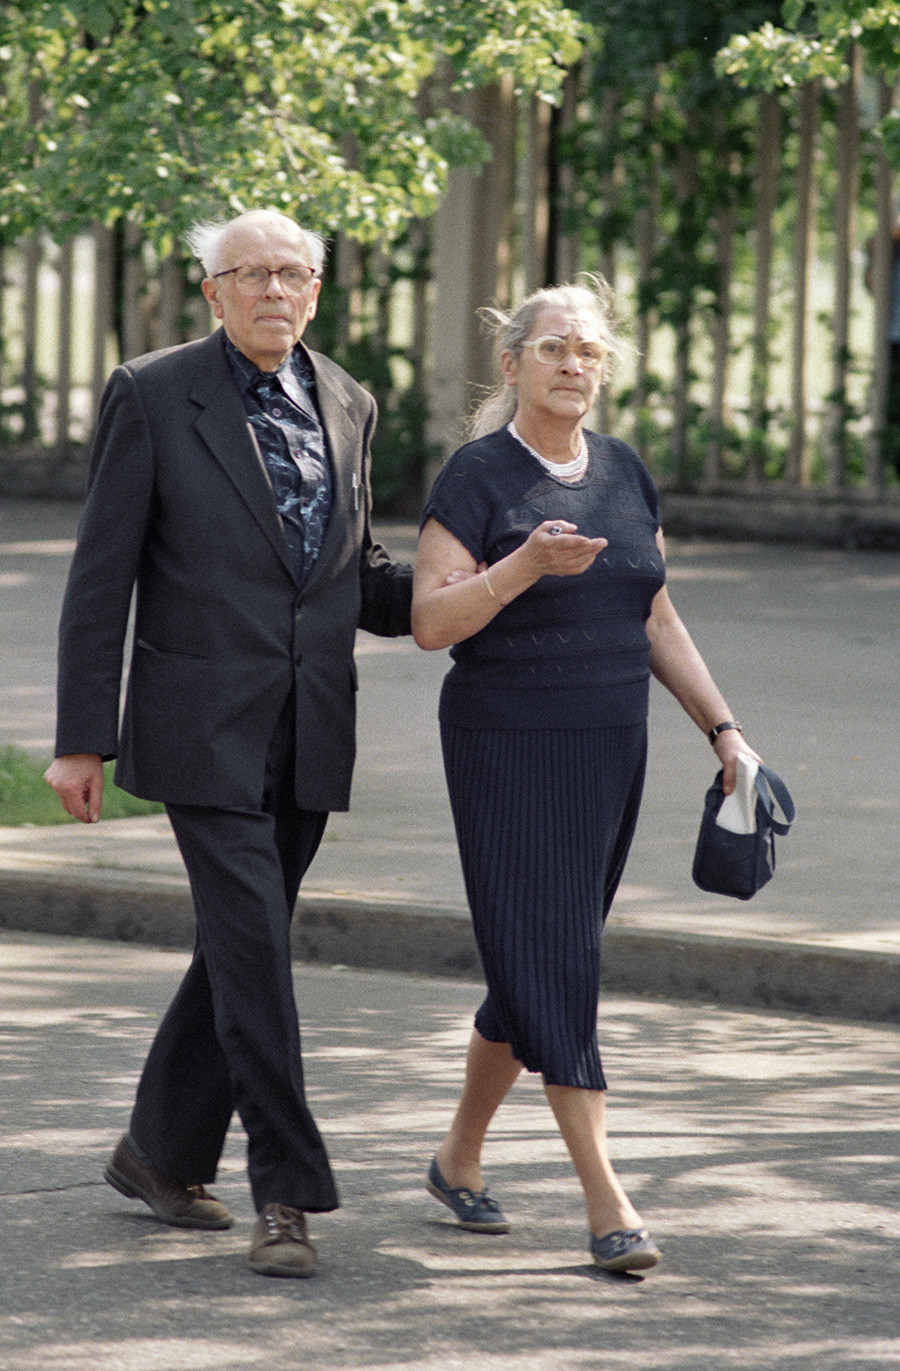 Andrêi Sákharov e a mulher, Elena Bonner.

